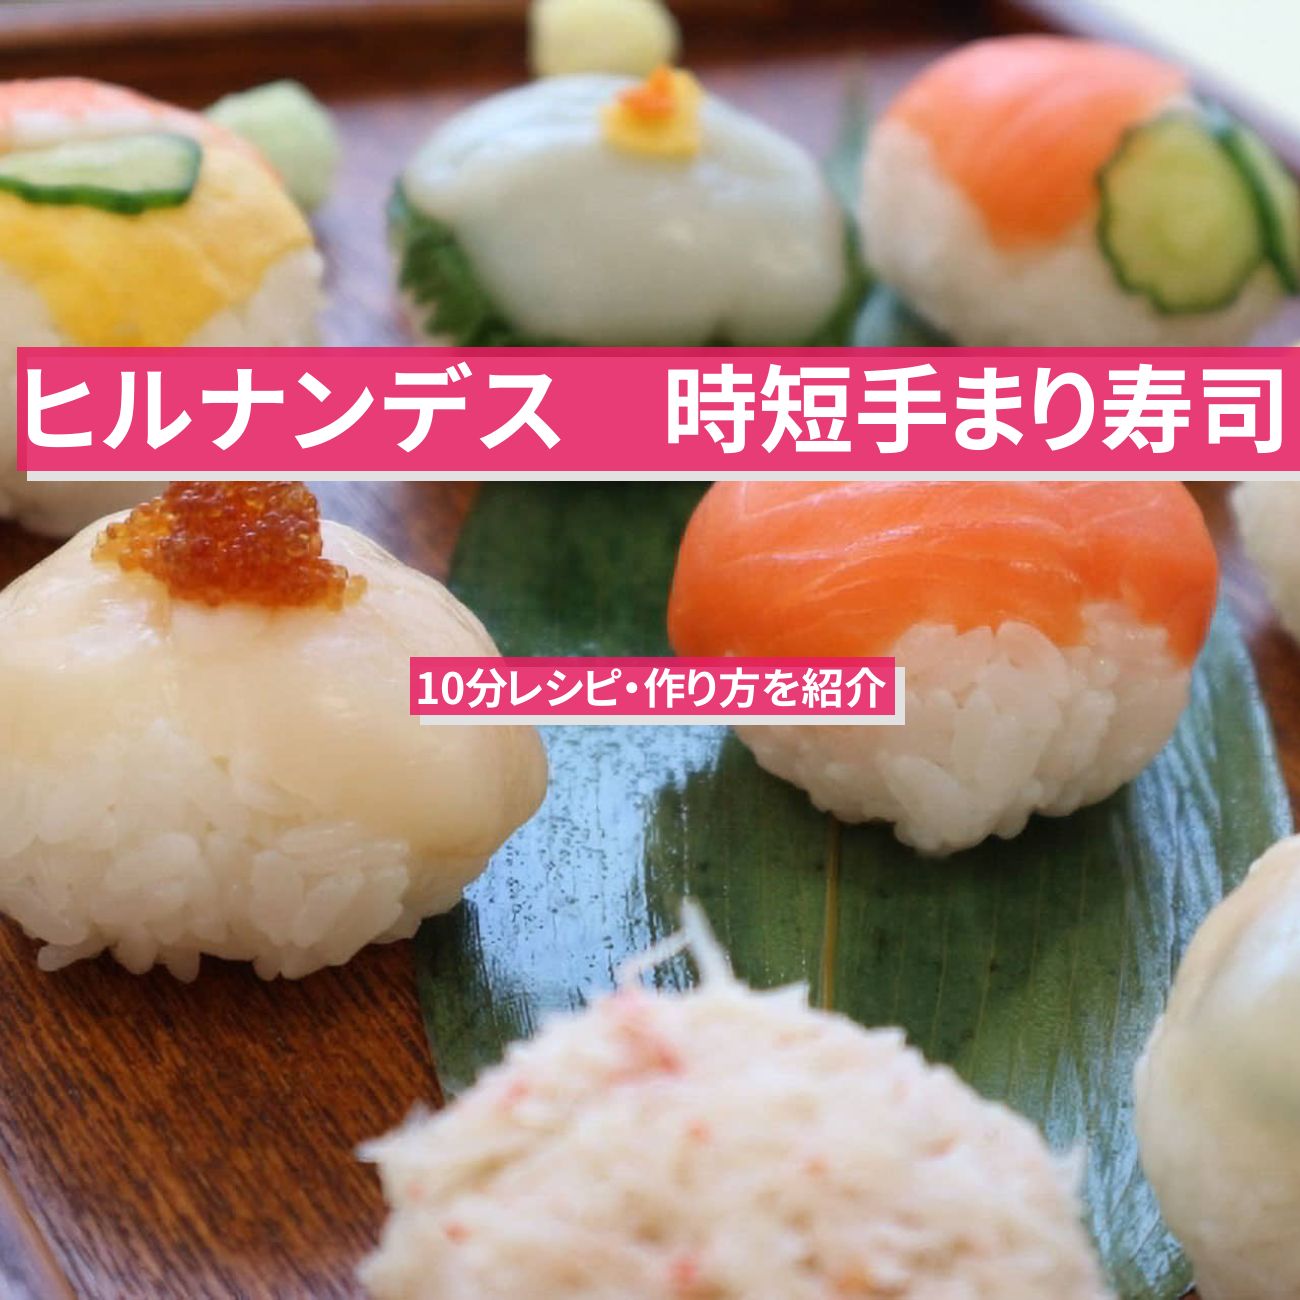 【ヒルナンデス】時短『手まり寿司』10分レシピ・作り方を紹介〔カラフル料理〕